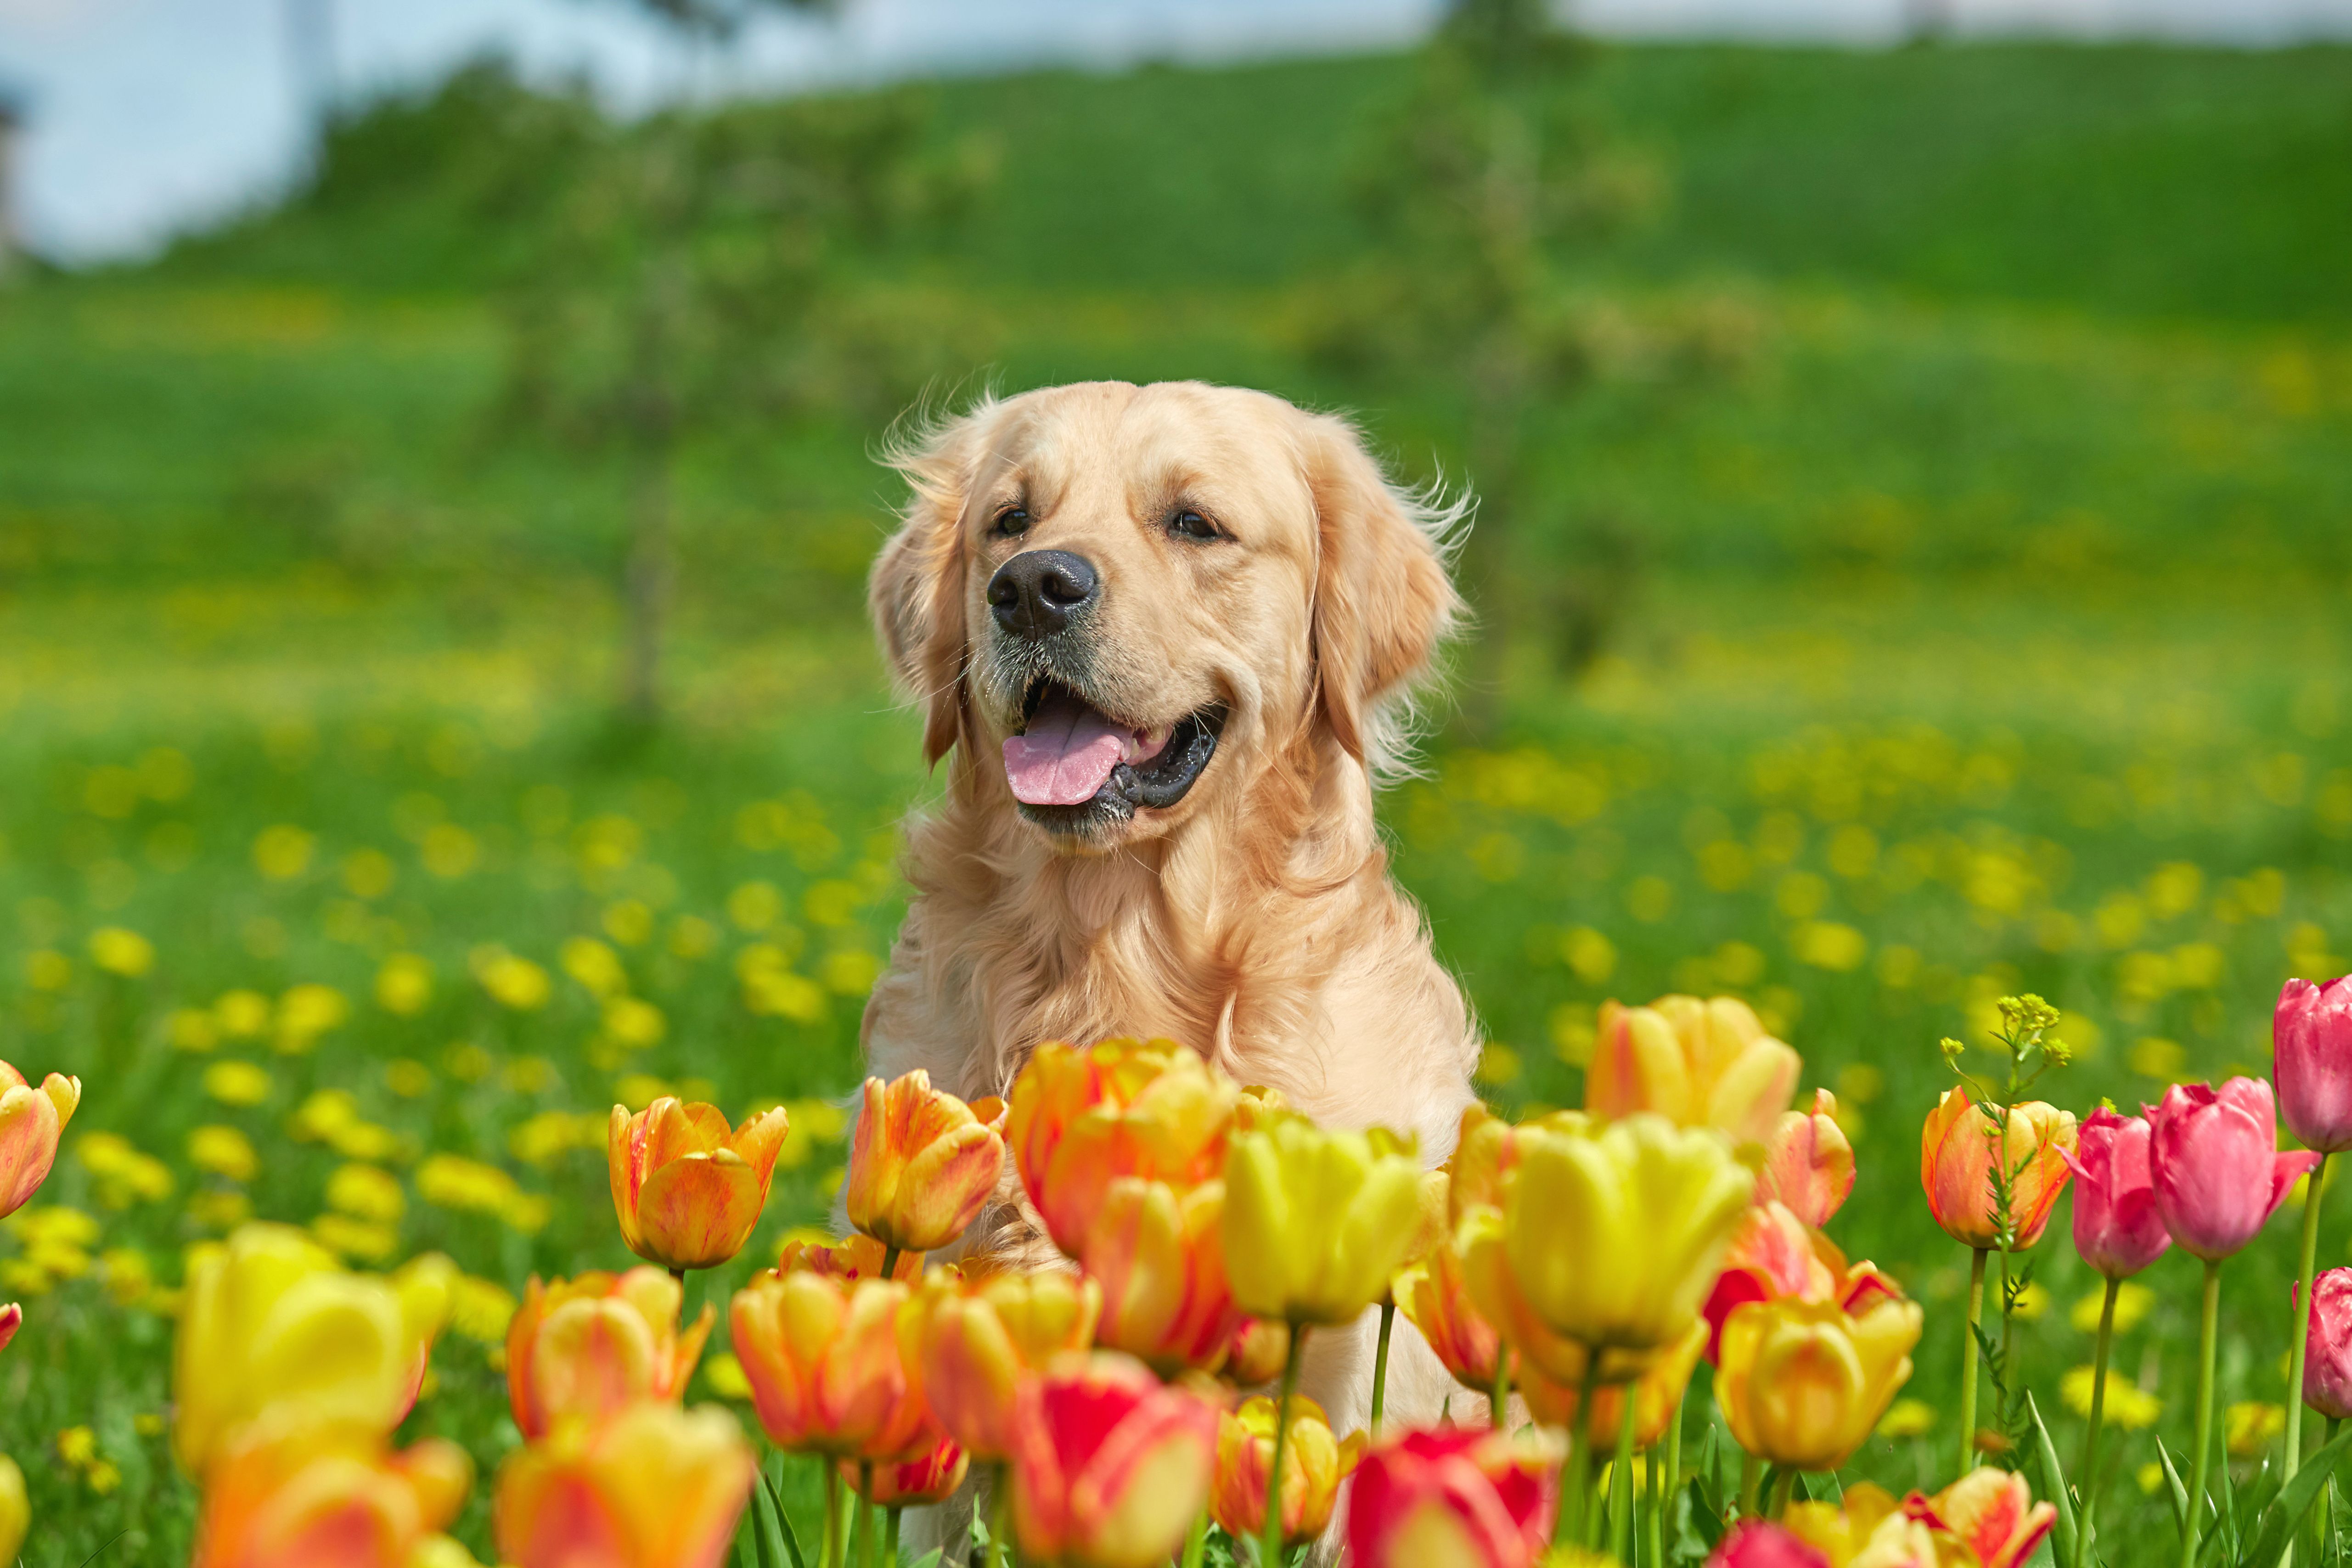 Expert shares pet care tips for springtime